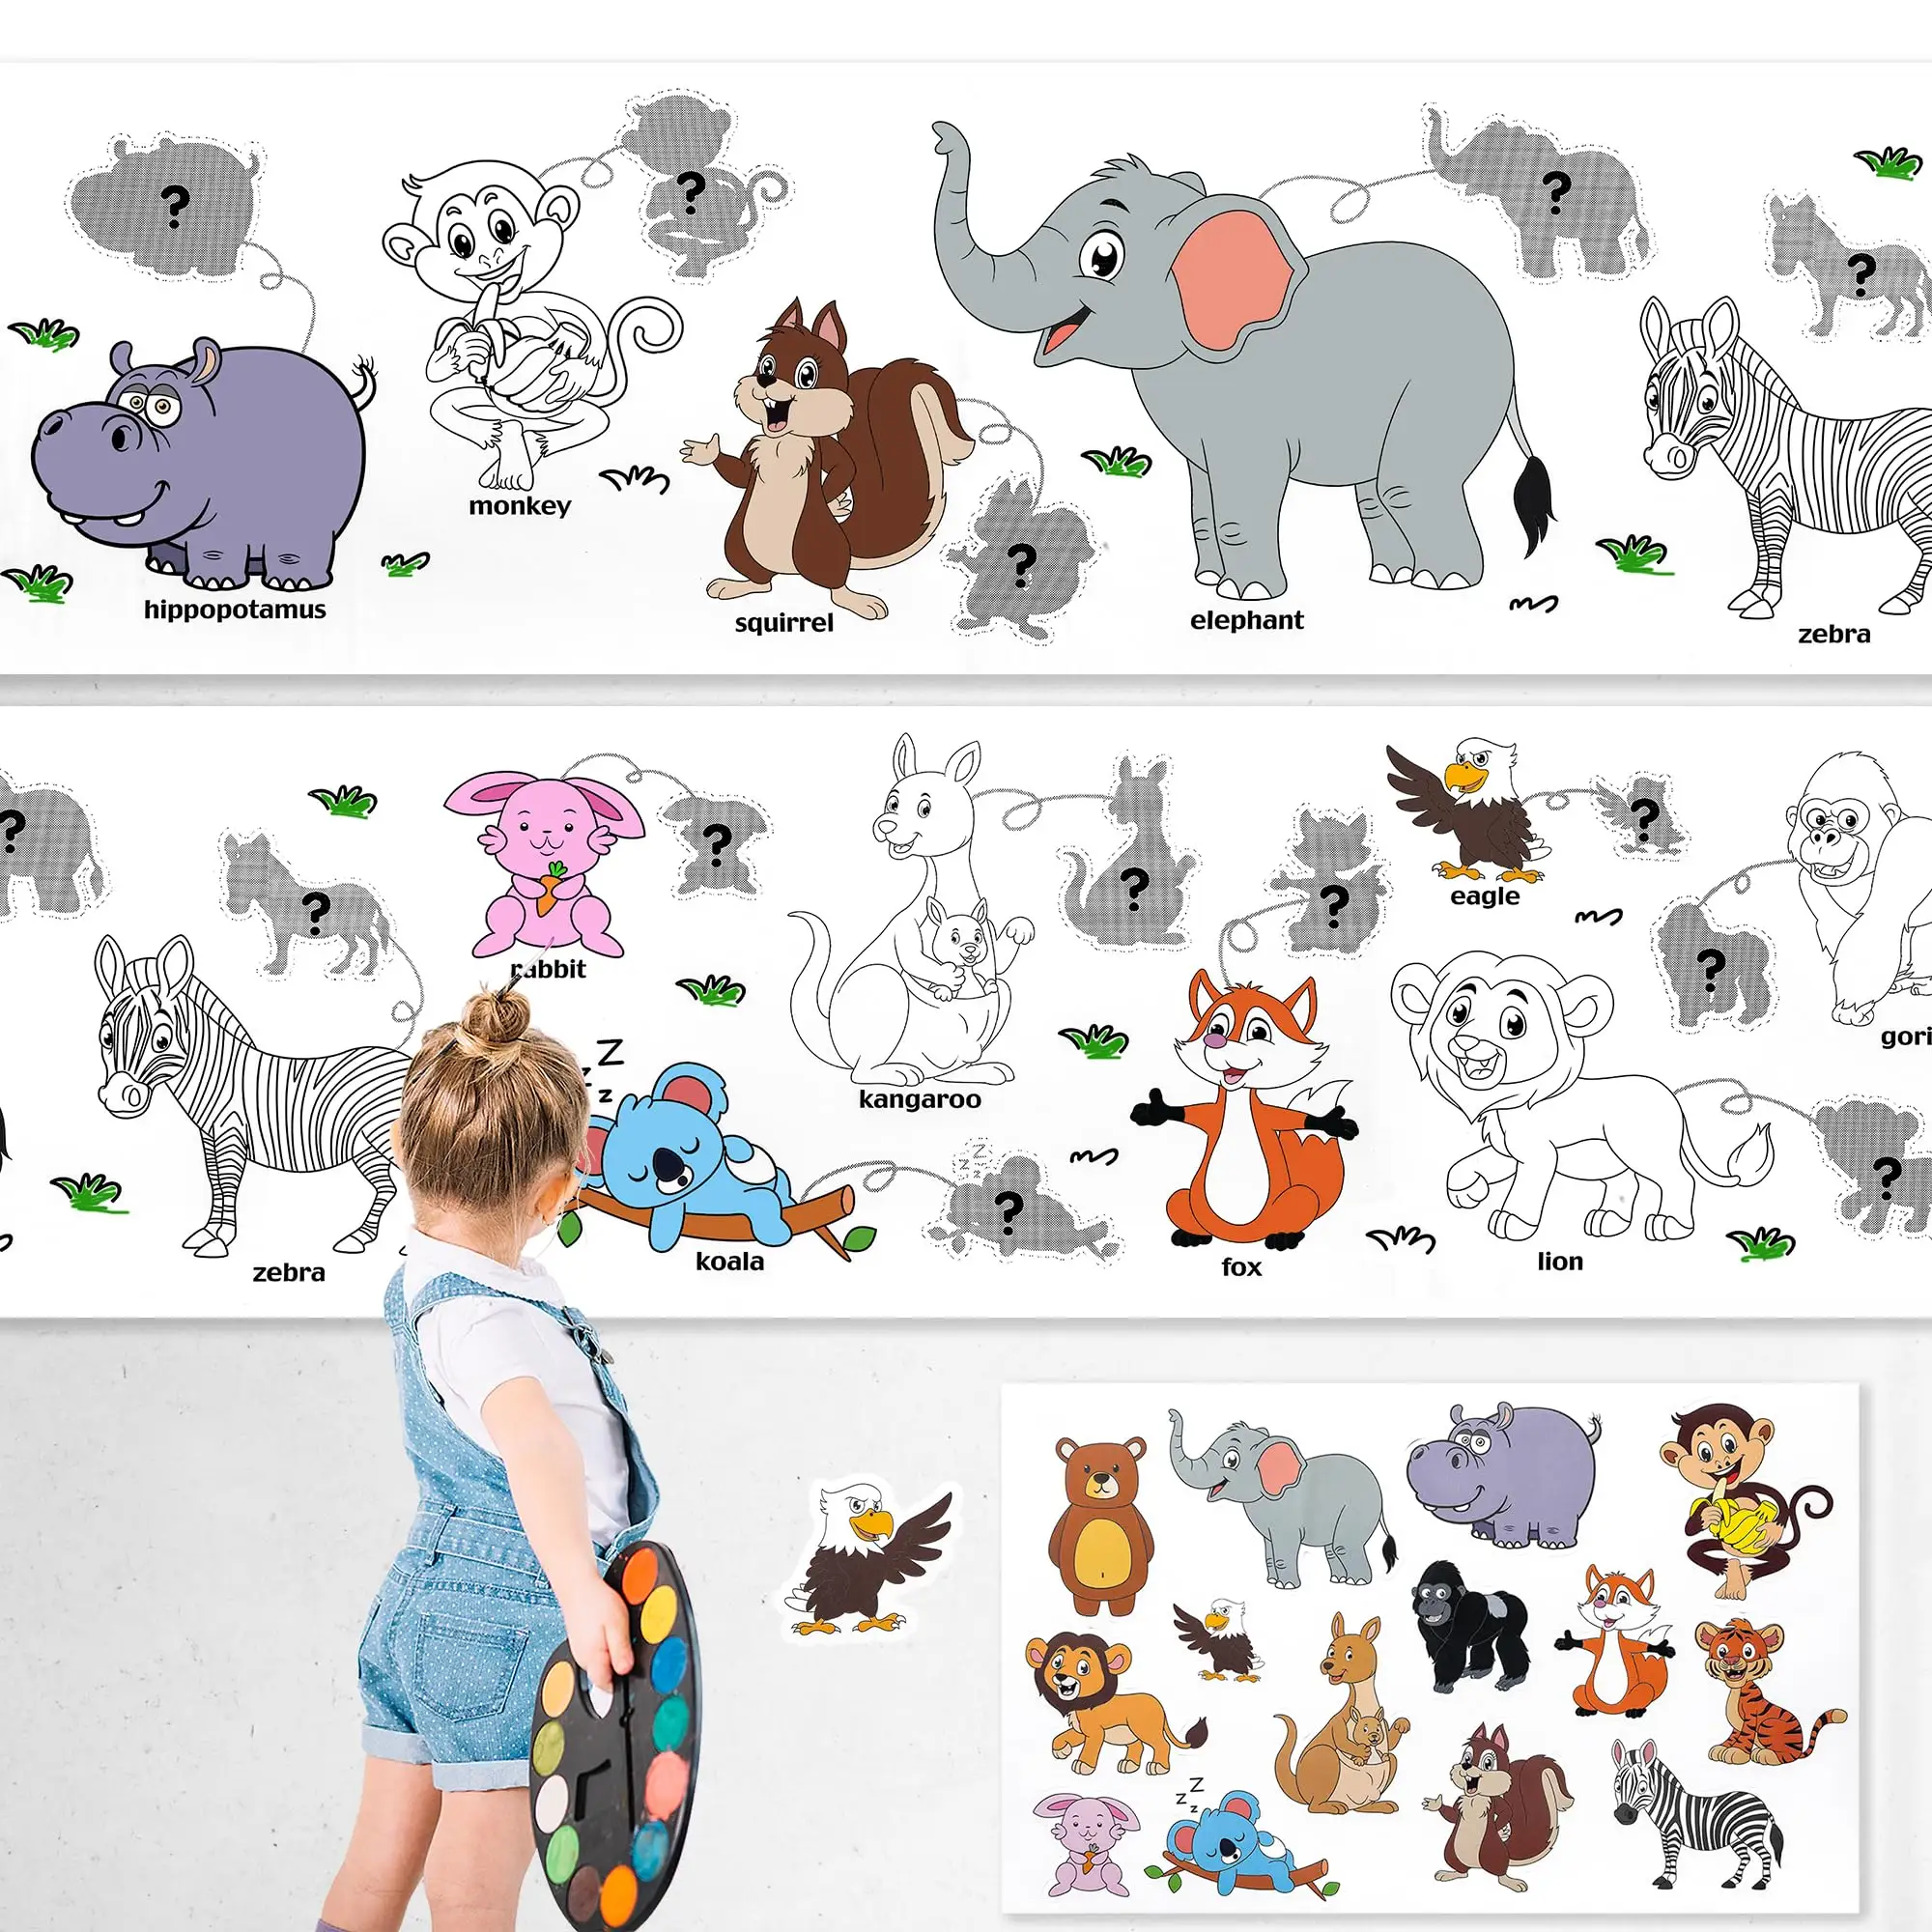 어린이를 위한 드로잉 롤, 스티커 색칠하기 종이 낙서 롤 유아를위한 낙서 스크롤 DIY 그림 교육 장난감 동물의 세계